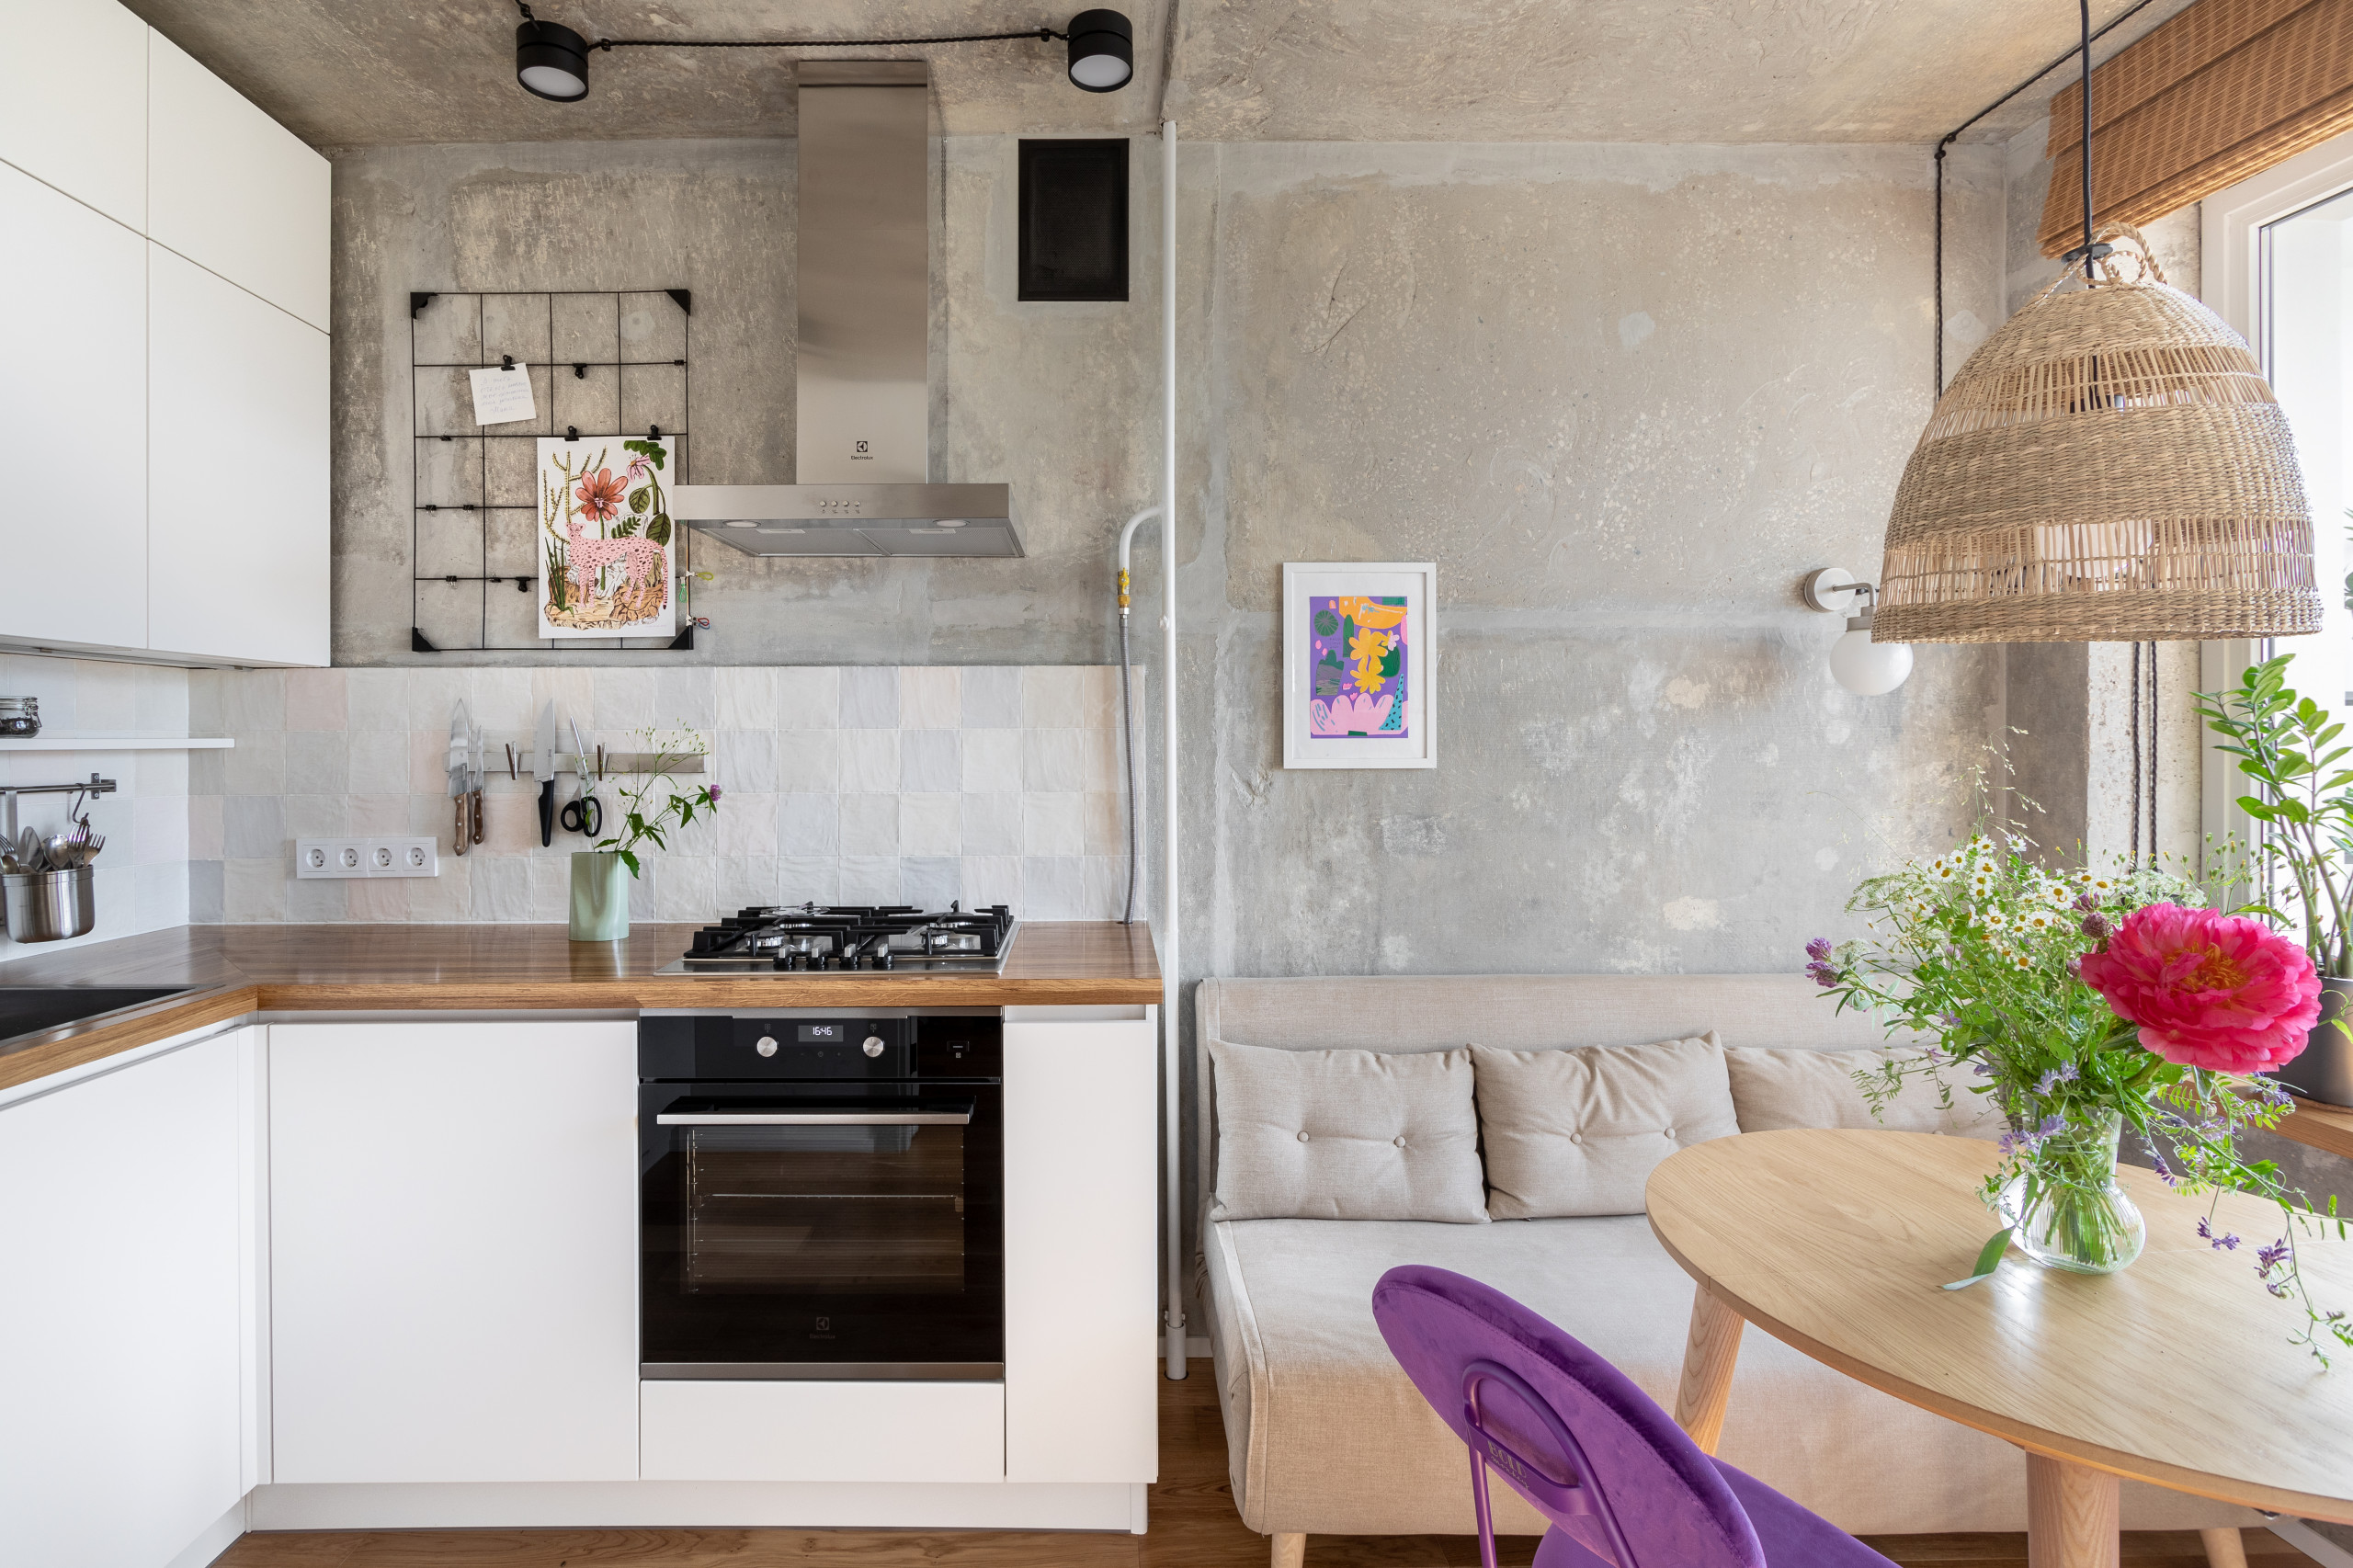 Дизайн кухни лофт – фото и идеи интерьера от профессиональных дизайнеров.